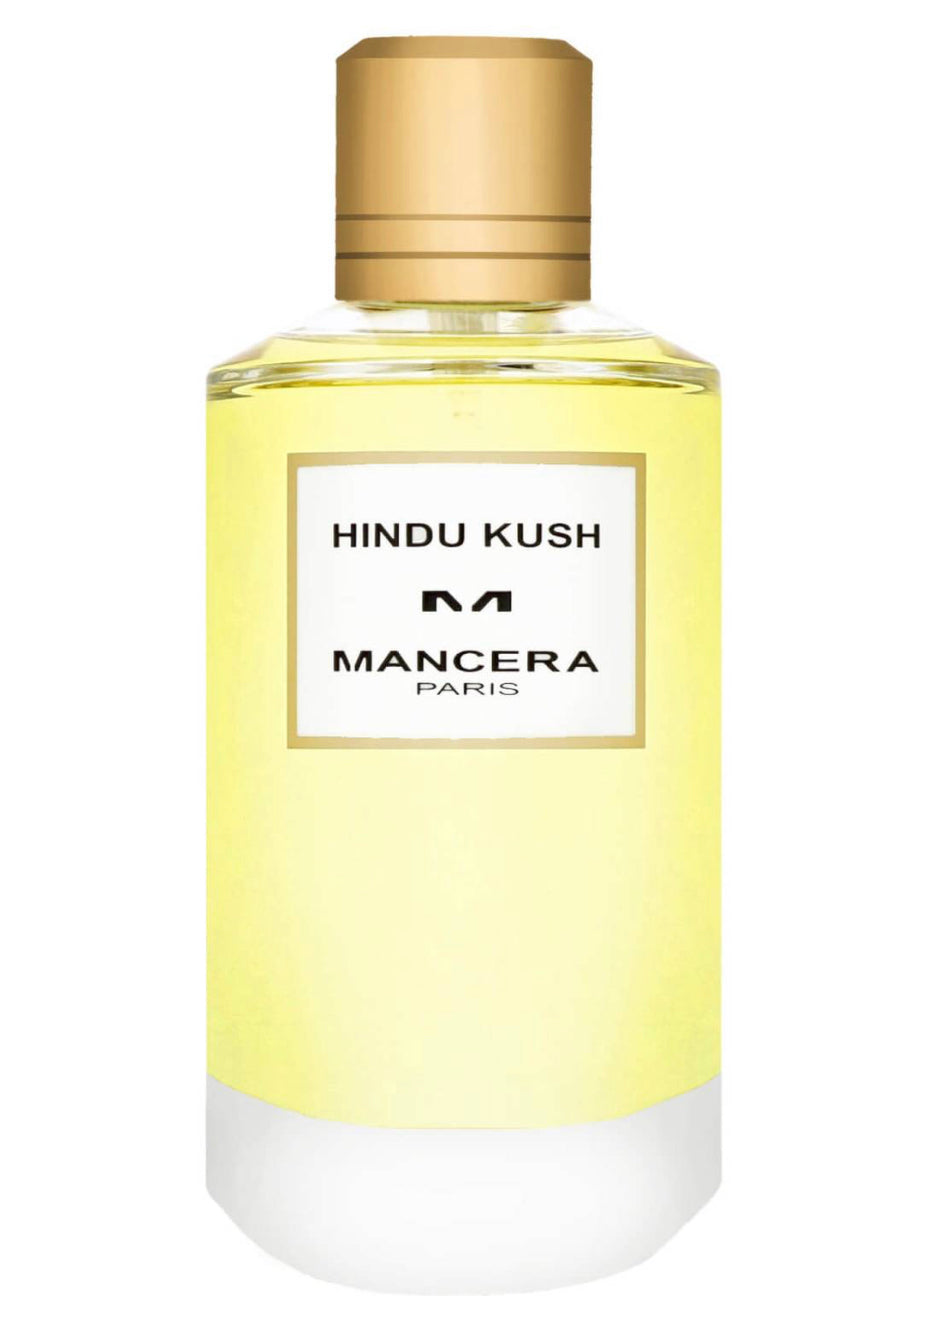 Mancera Hindu Kush Eau De Parfum Samples